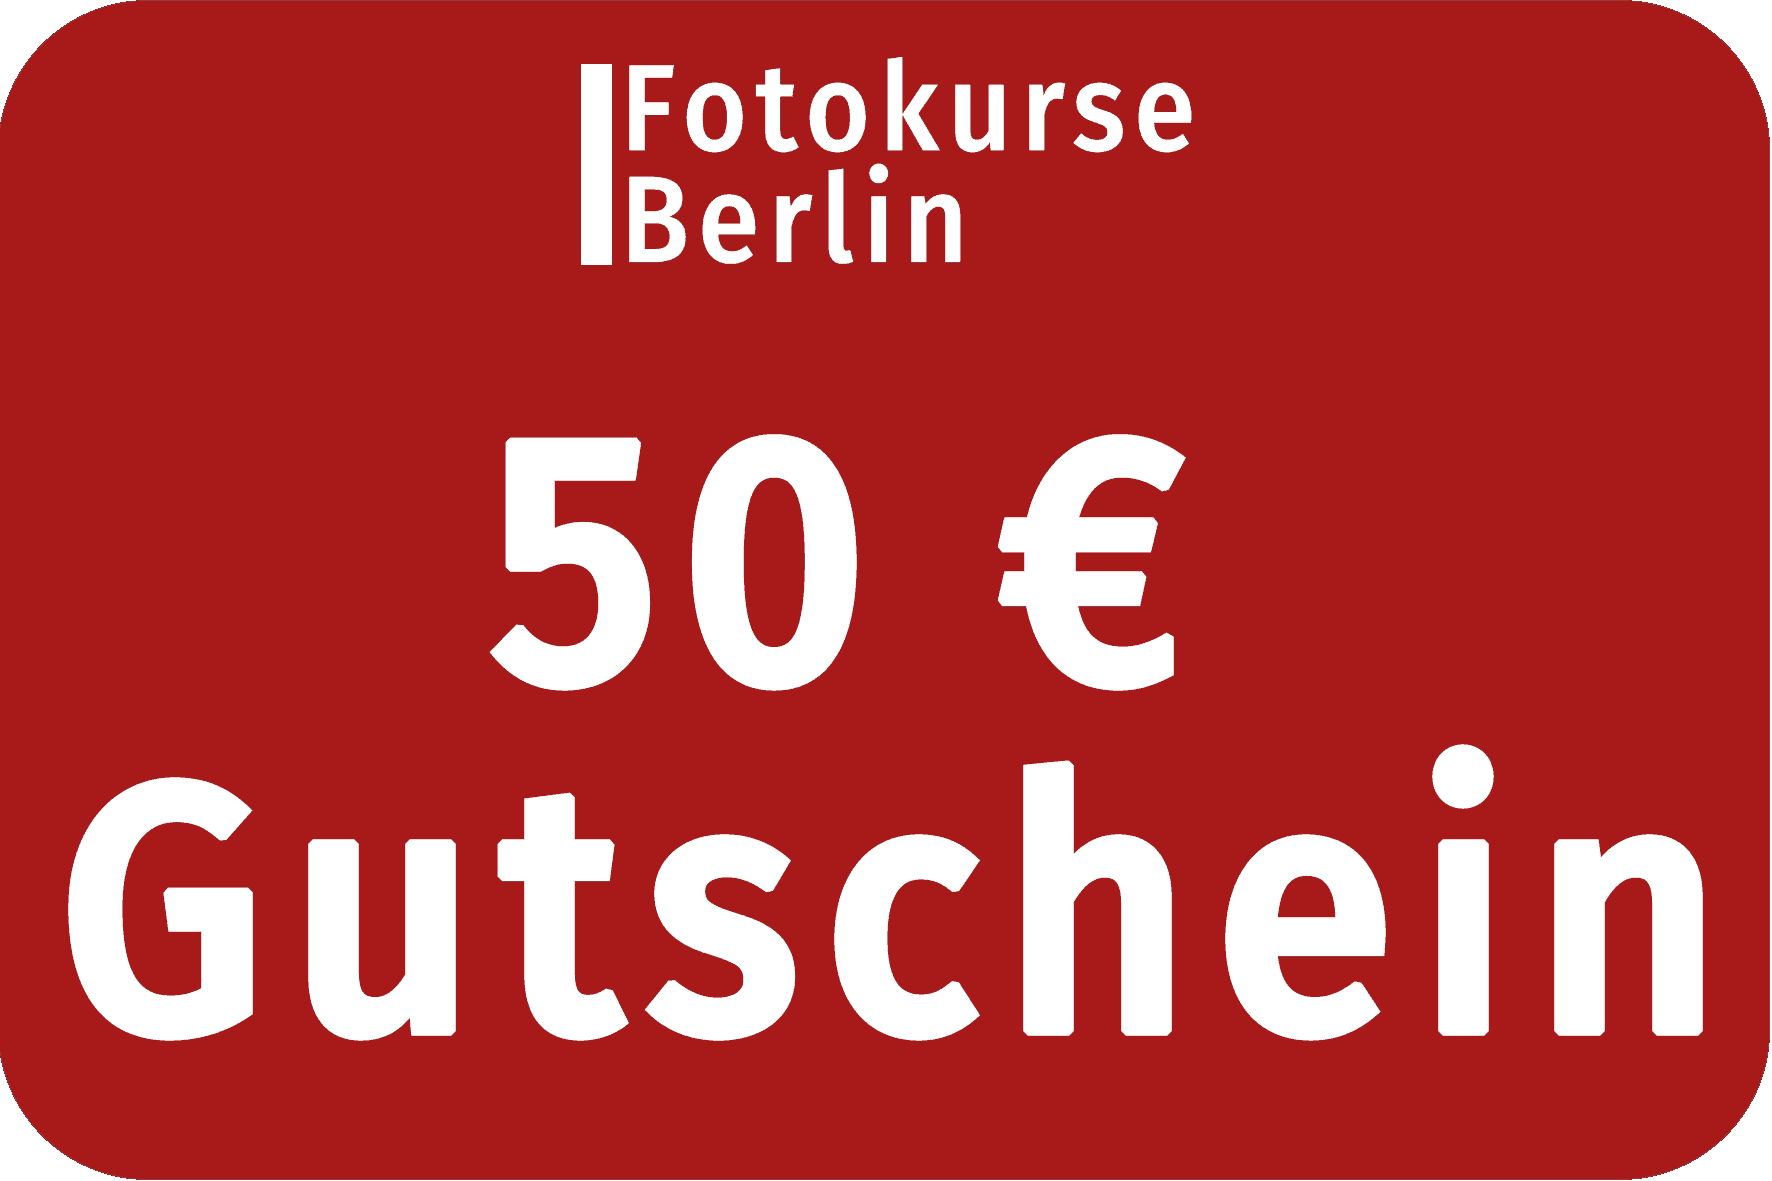 50 Euro Gutschein FotokurseBerlin.de